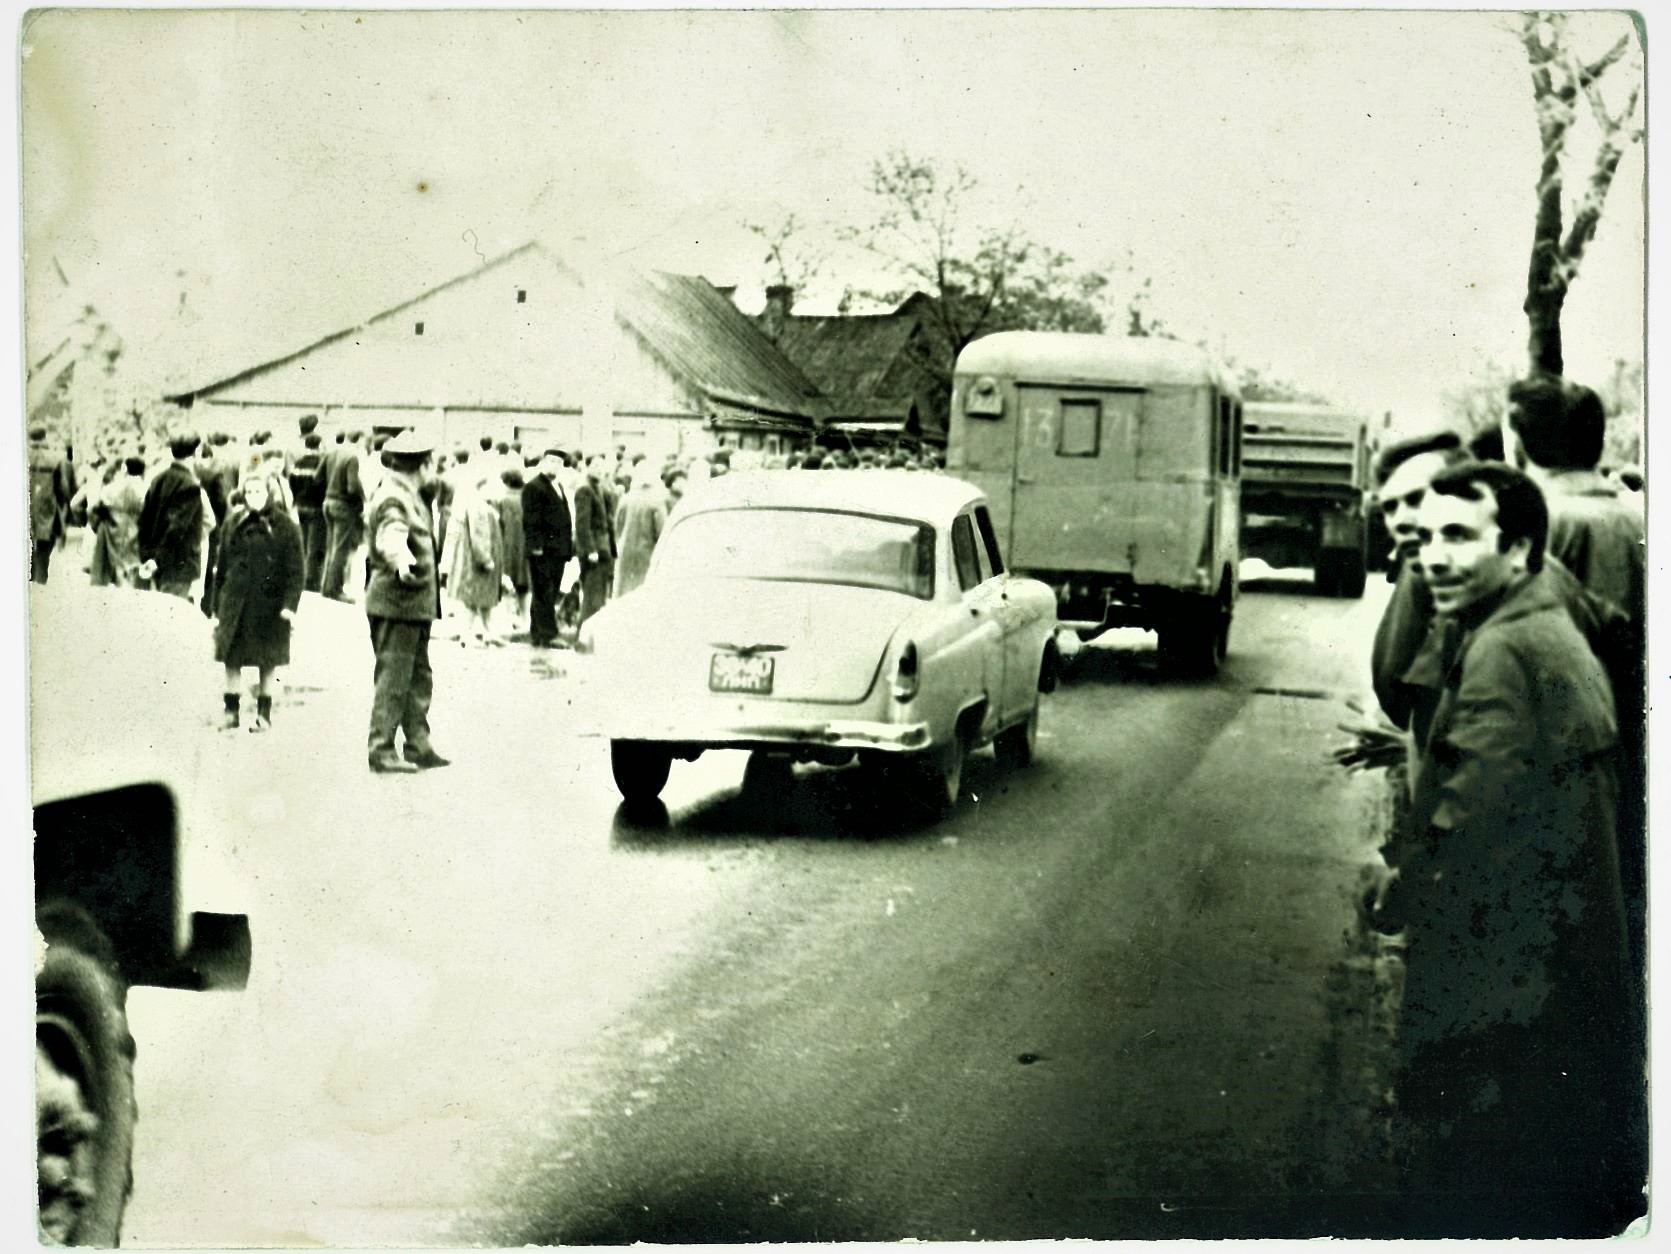 Romo Kalantos laidotuvių diena prie jo namo Panerių gatvėje. Kaunas 1972 m. gegužės 18 d. | A.Babrausko archyvas, nežinomo autoriaus nuotr.